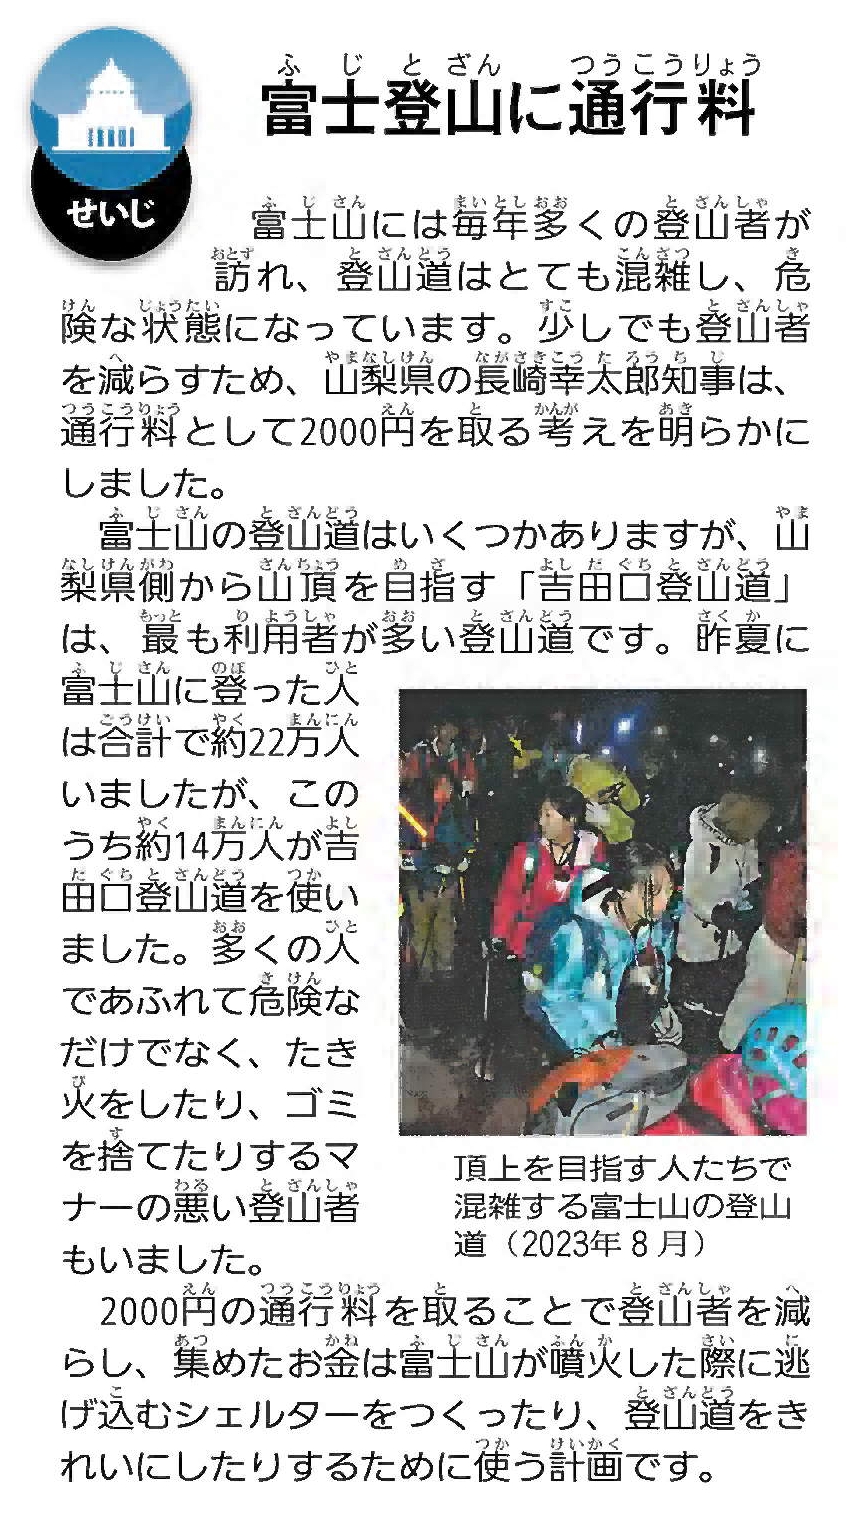 ニュースクリップ　政治の記事「富士登山に通行料」の画像